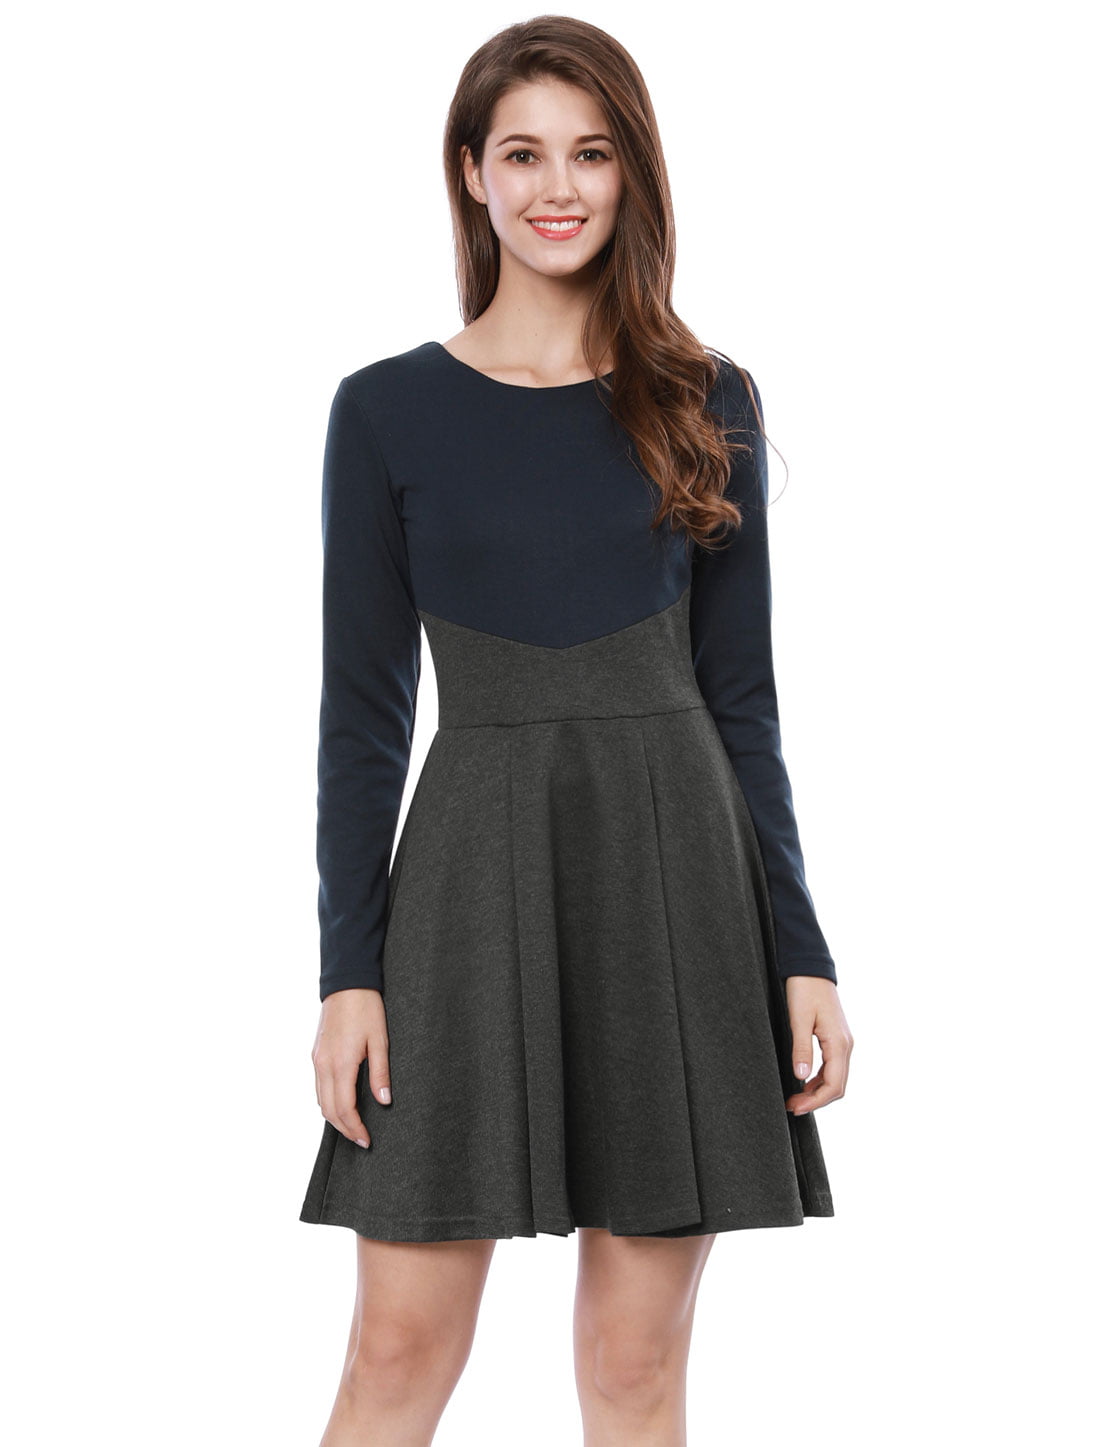 Unique Bargains - Women Skirt Contrast Color Above Knee A Line Dress ...